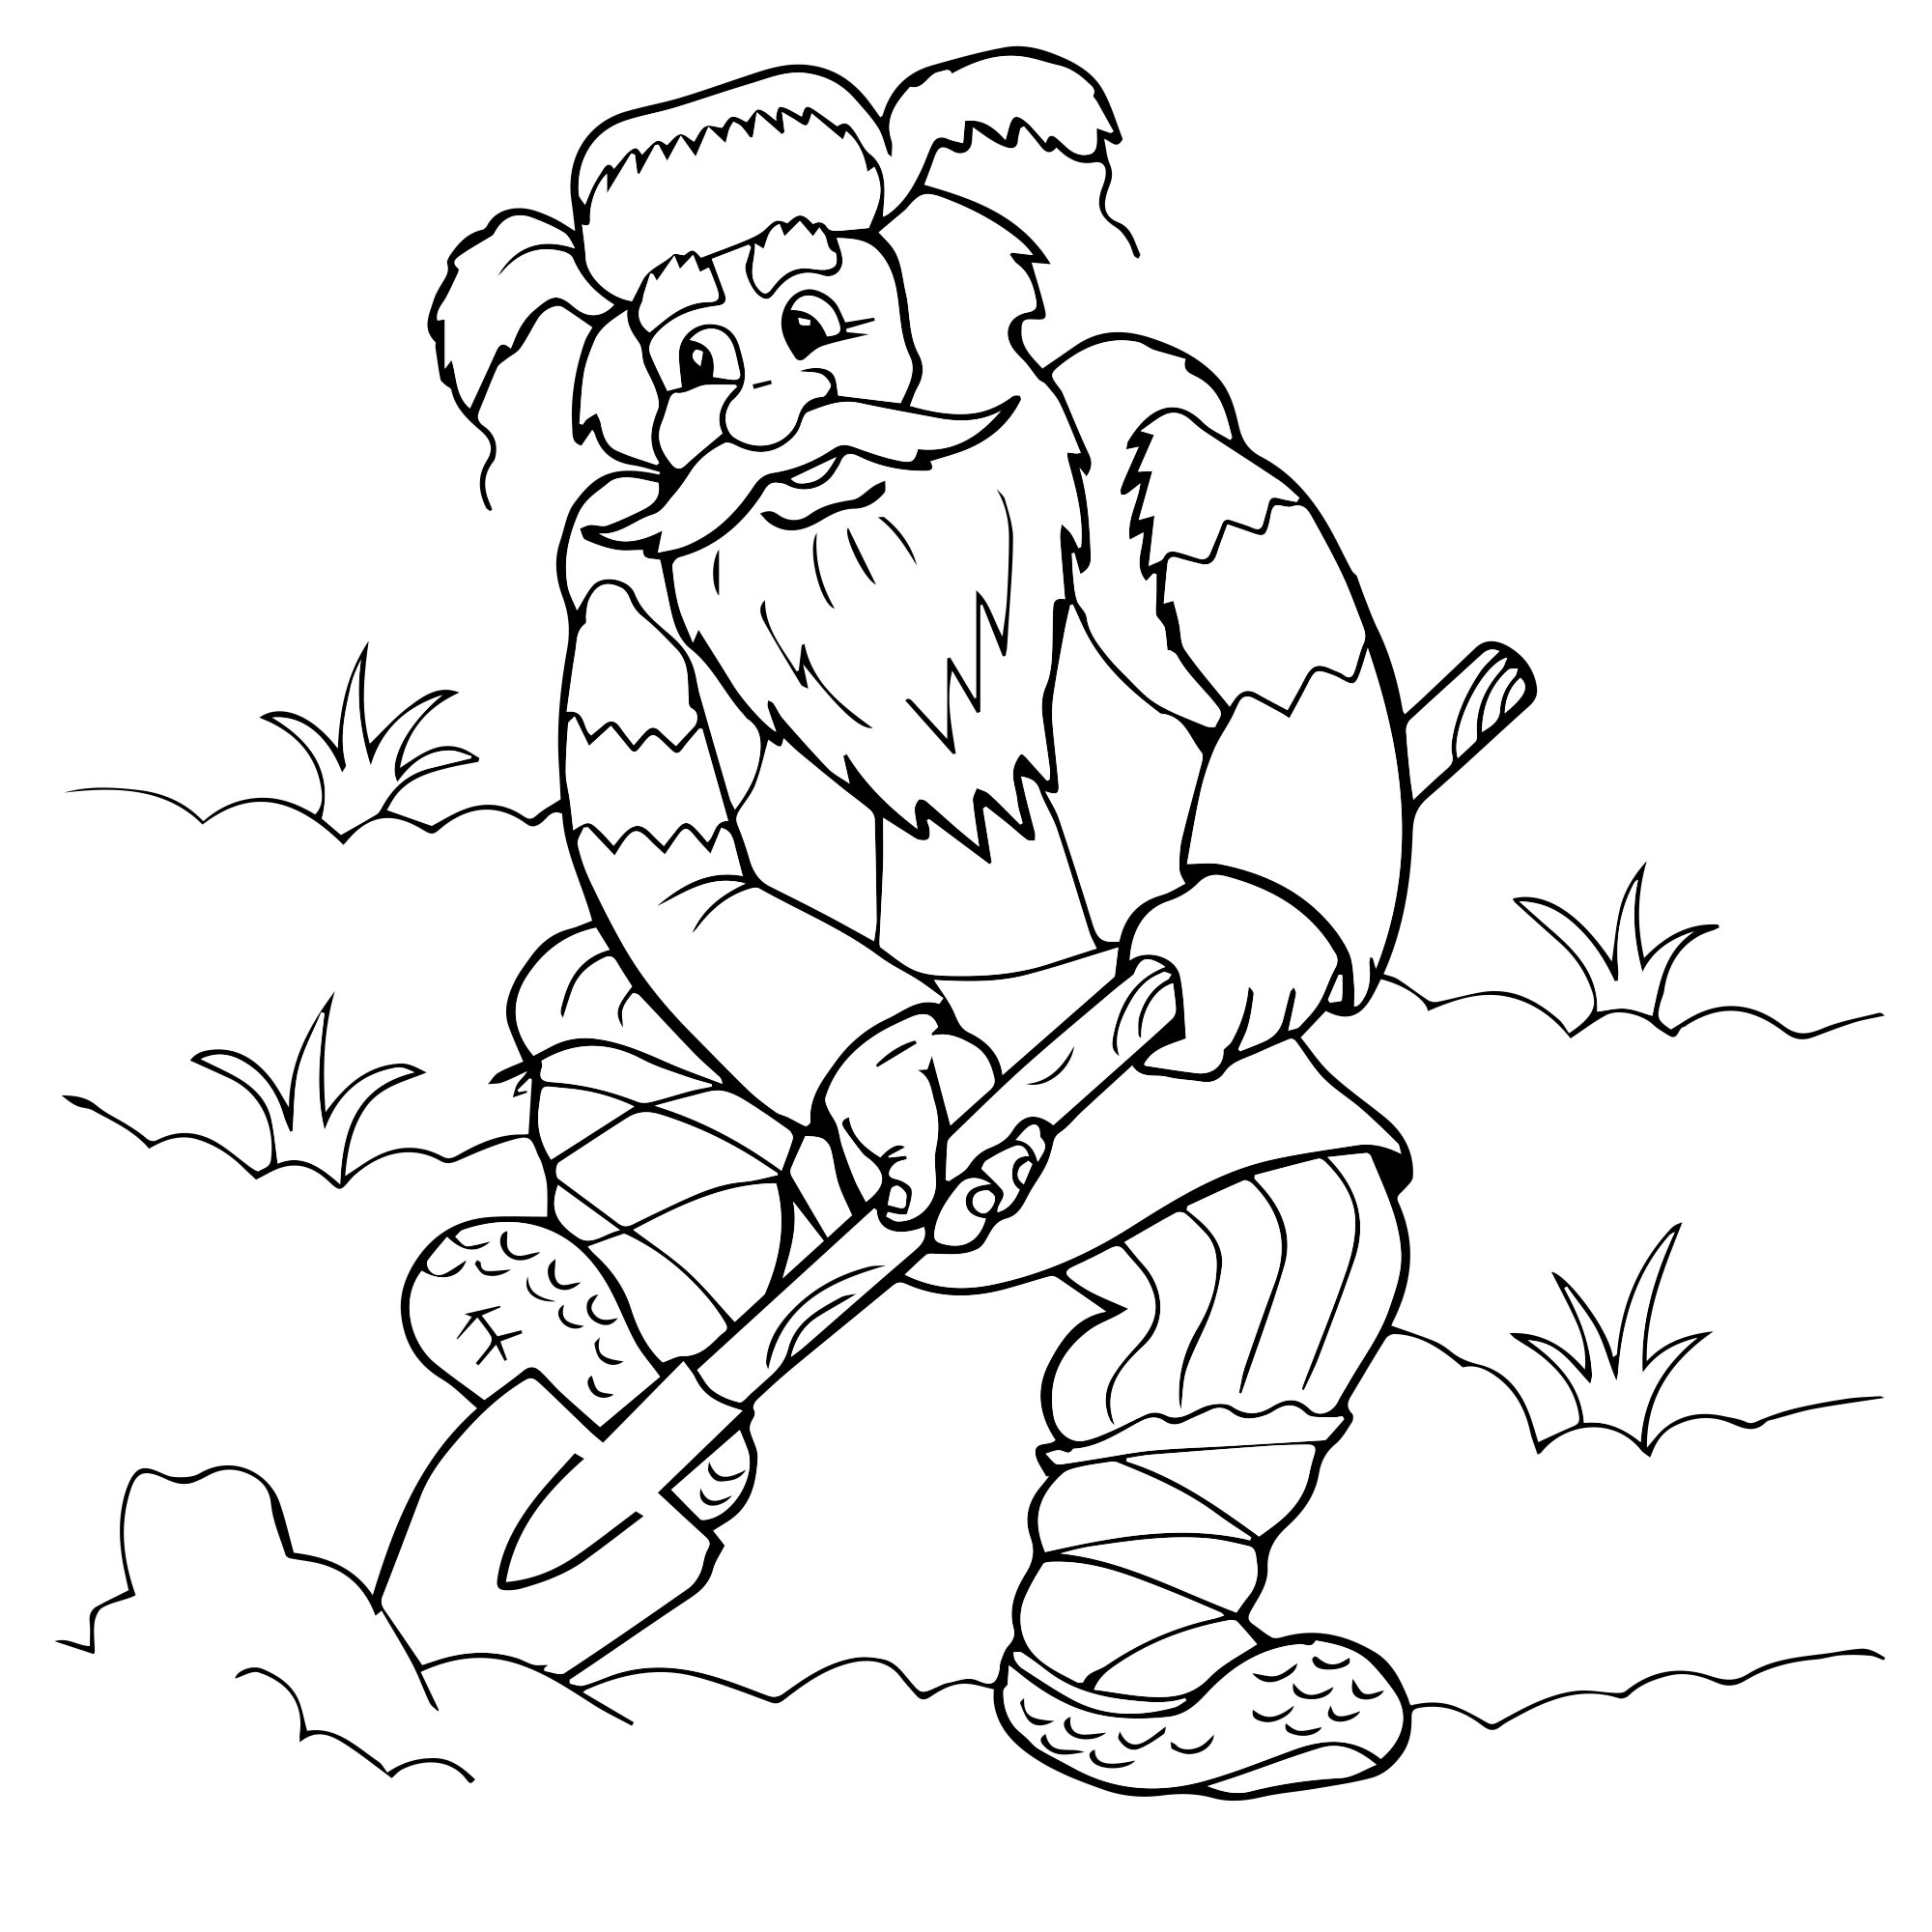 Дед Мороз - Распечатать раскраску для детей